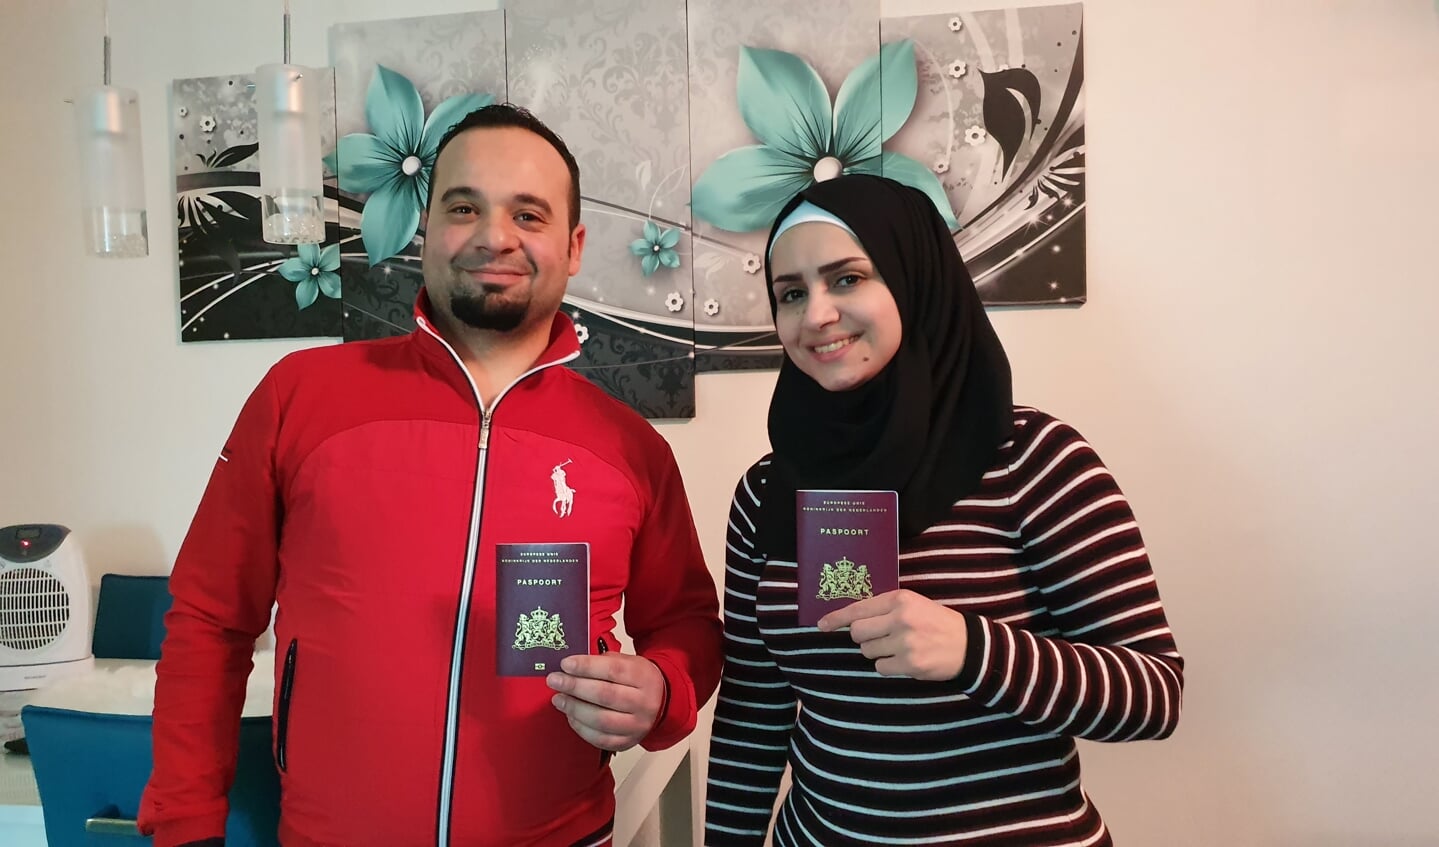 Mouhanned en Yasmin zijn trots op hun paspoorten